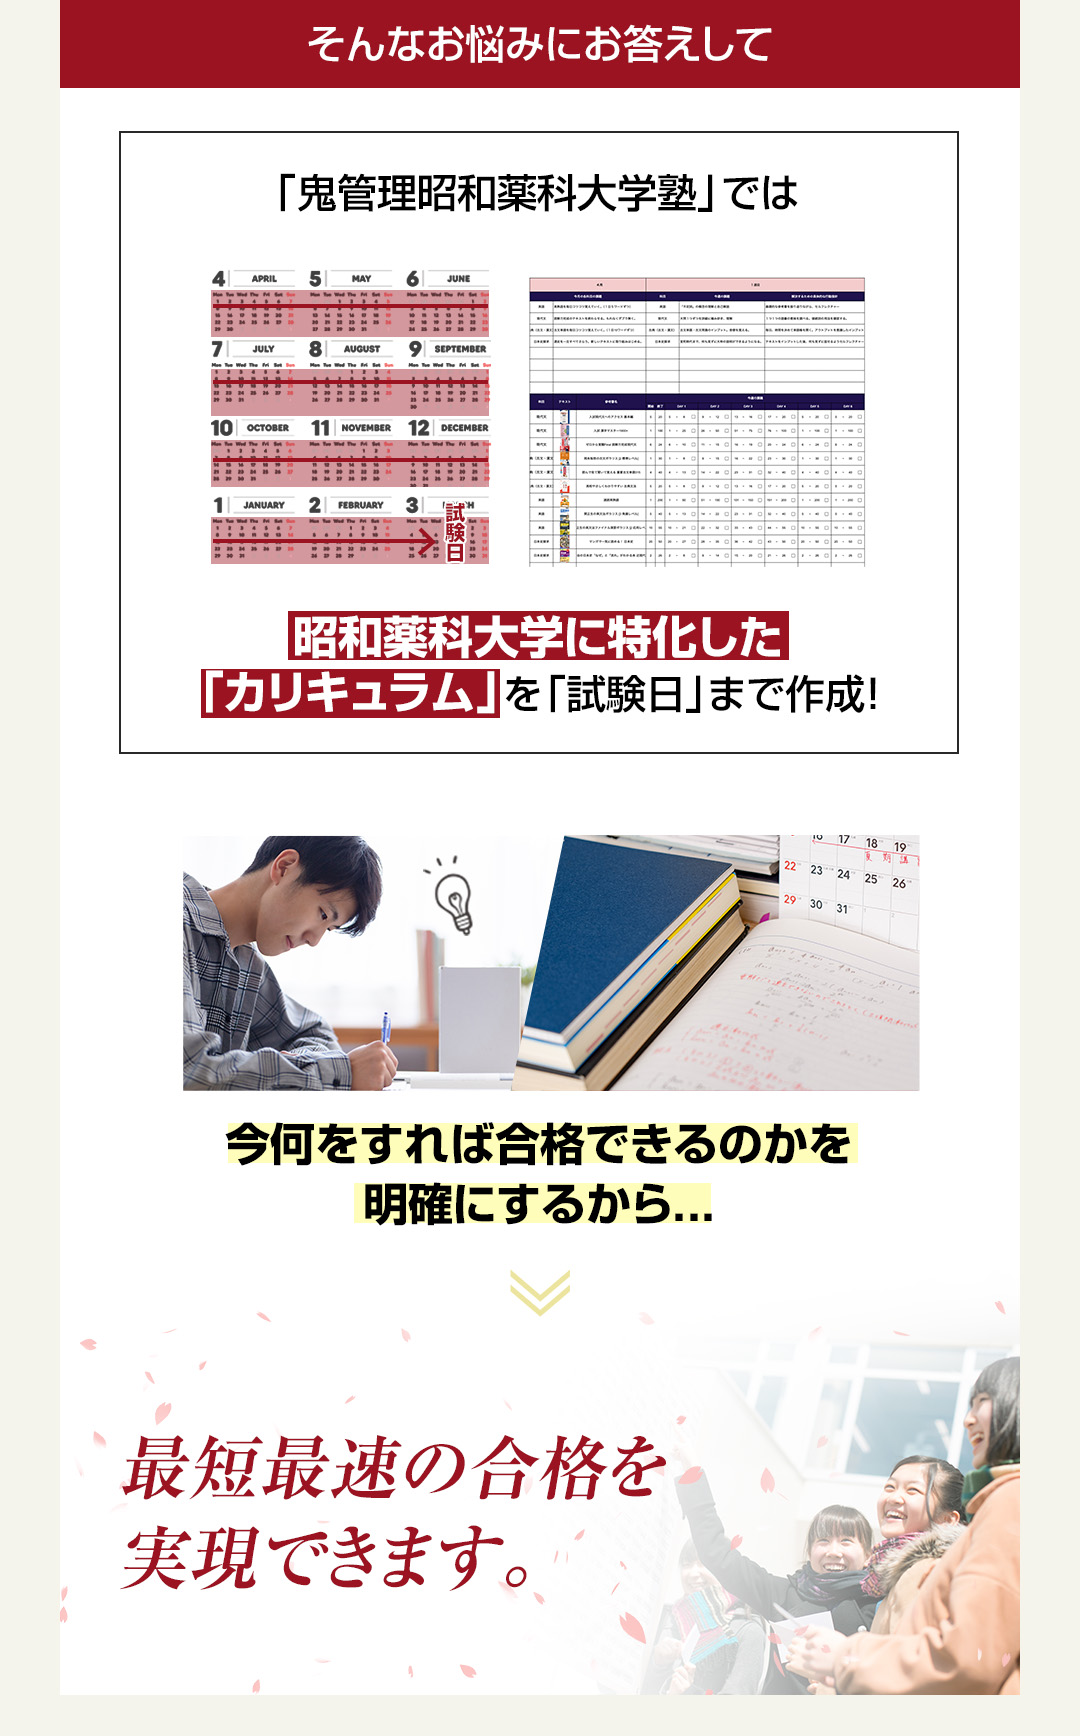 「鬼管理昭和薬科大学塾」では昭和薬科大学に特化した「カリキュラム」を「試験日」まで作成